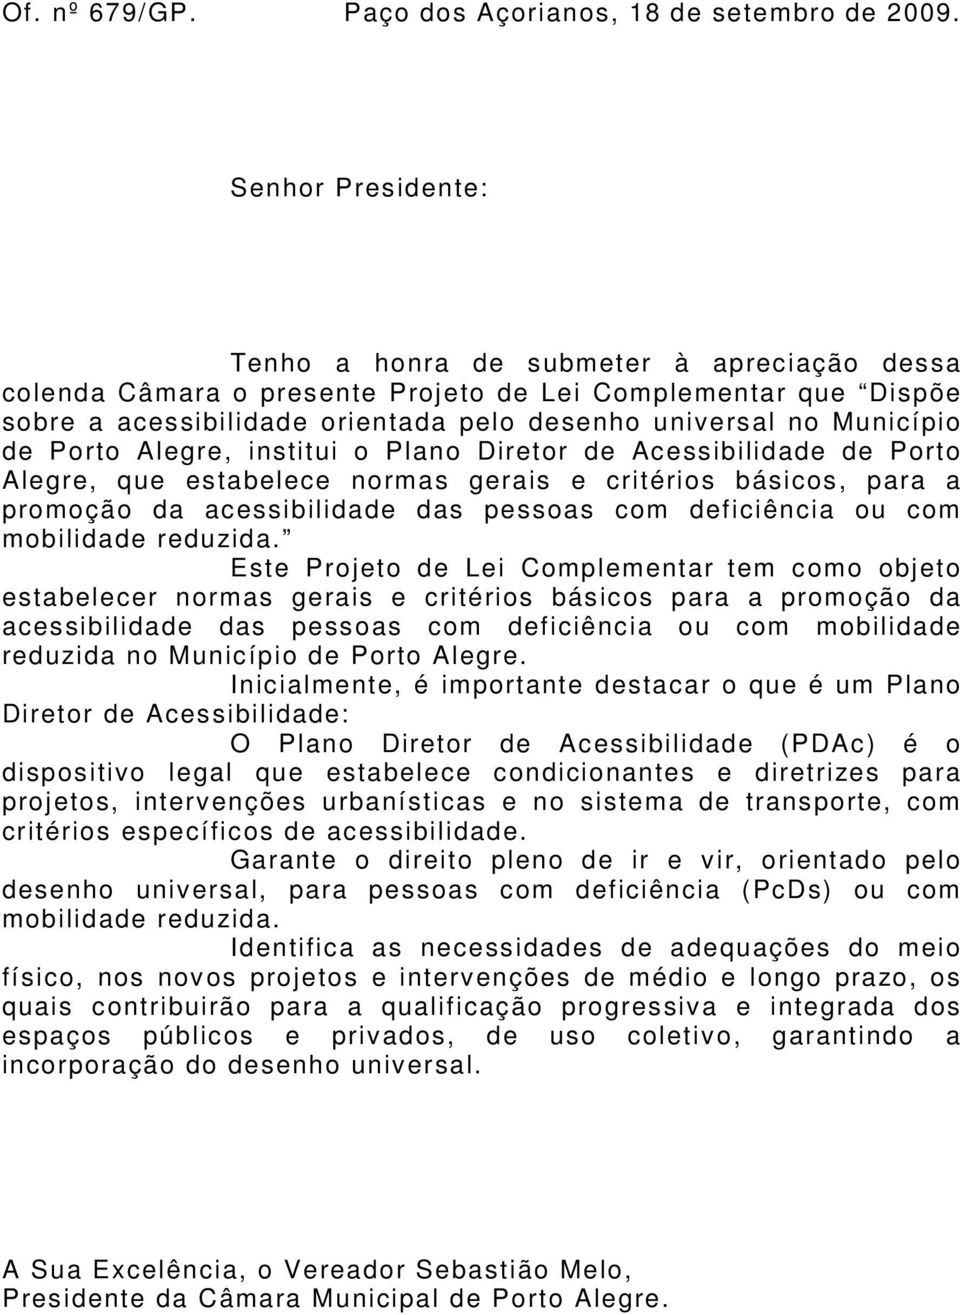 de Porto Alegre, institui o Plano Diretor de Acessibilidade de Porto Alegre, que estabelece normas gerais e critérios básicos, para a promoção da acessibilidade das pessoas com deficiência ou com